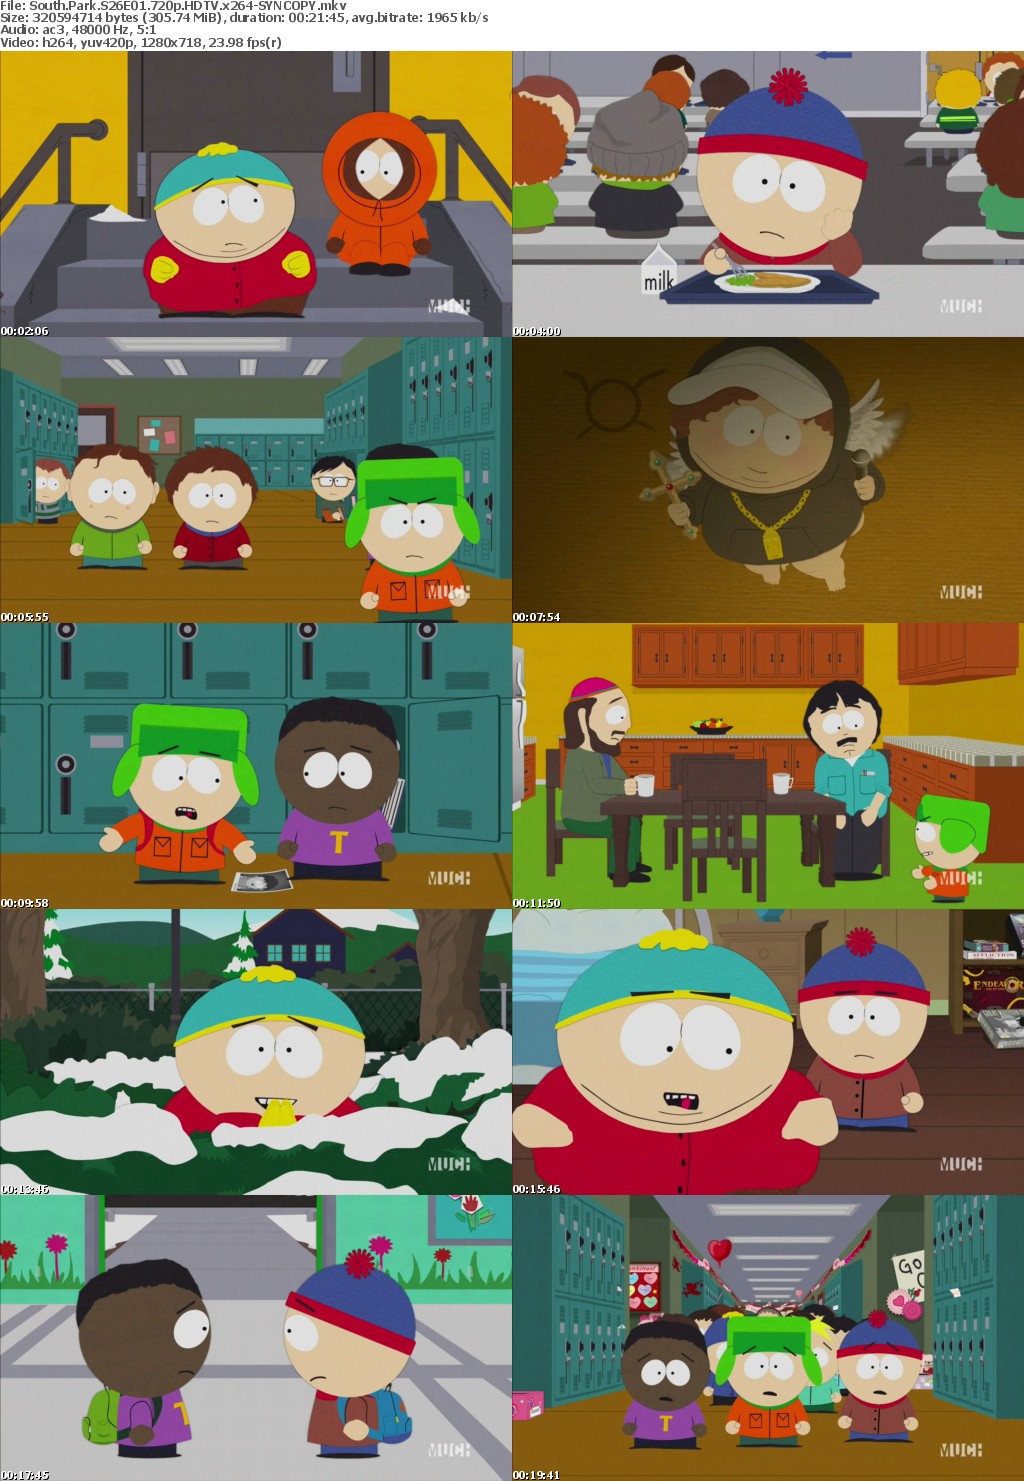 South Park S26E01 720p HDTV x264-SYNCOPY